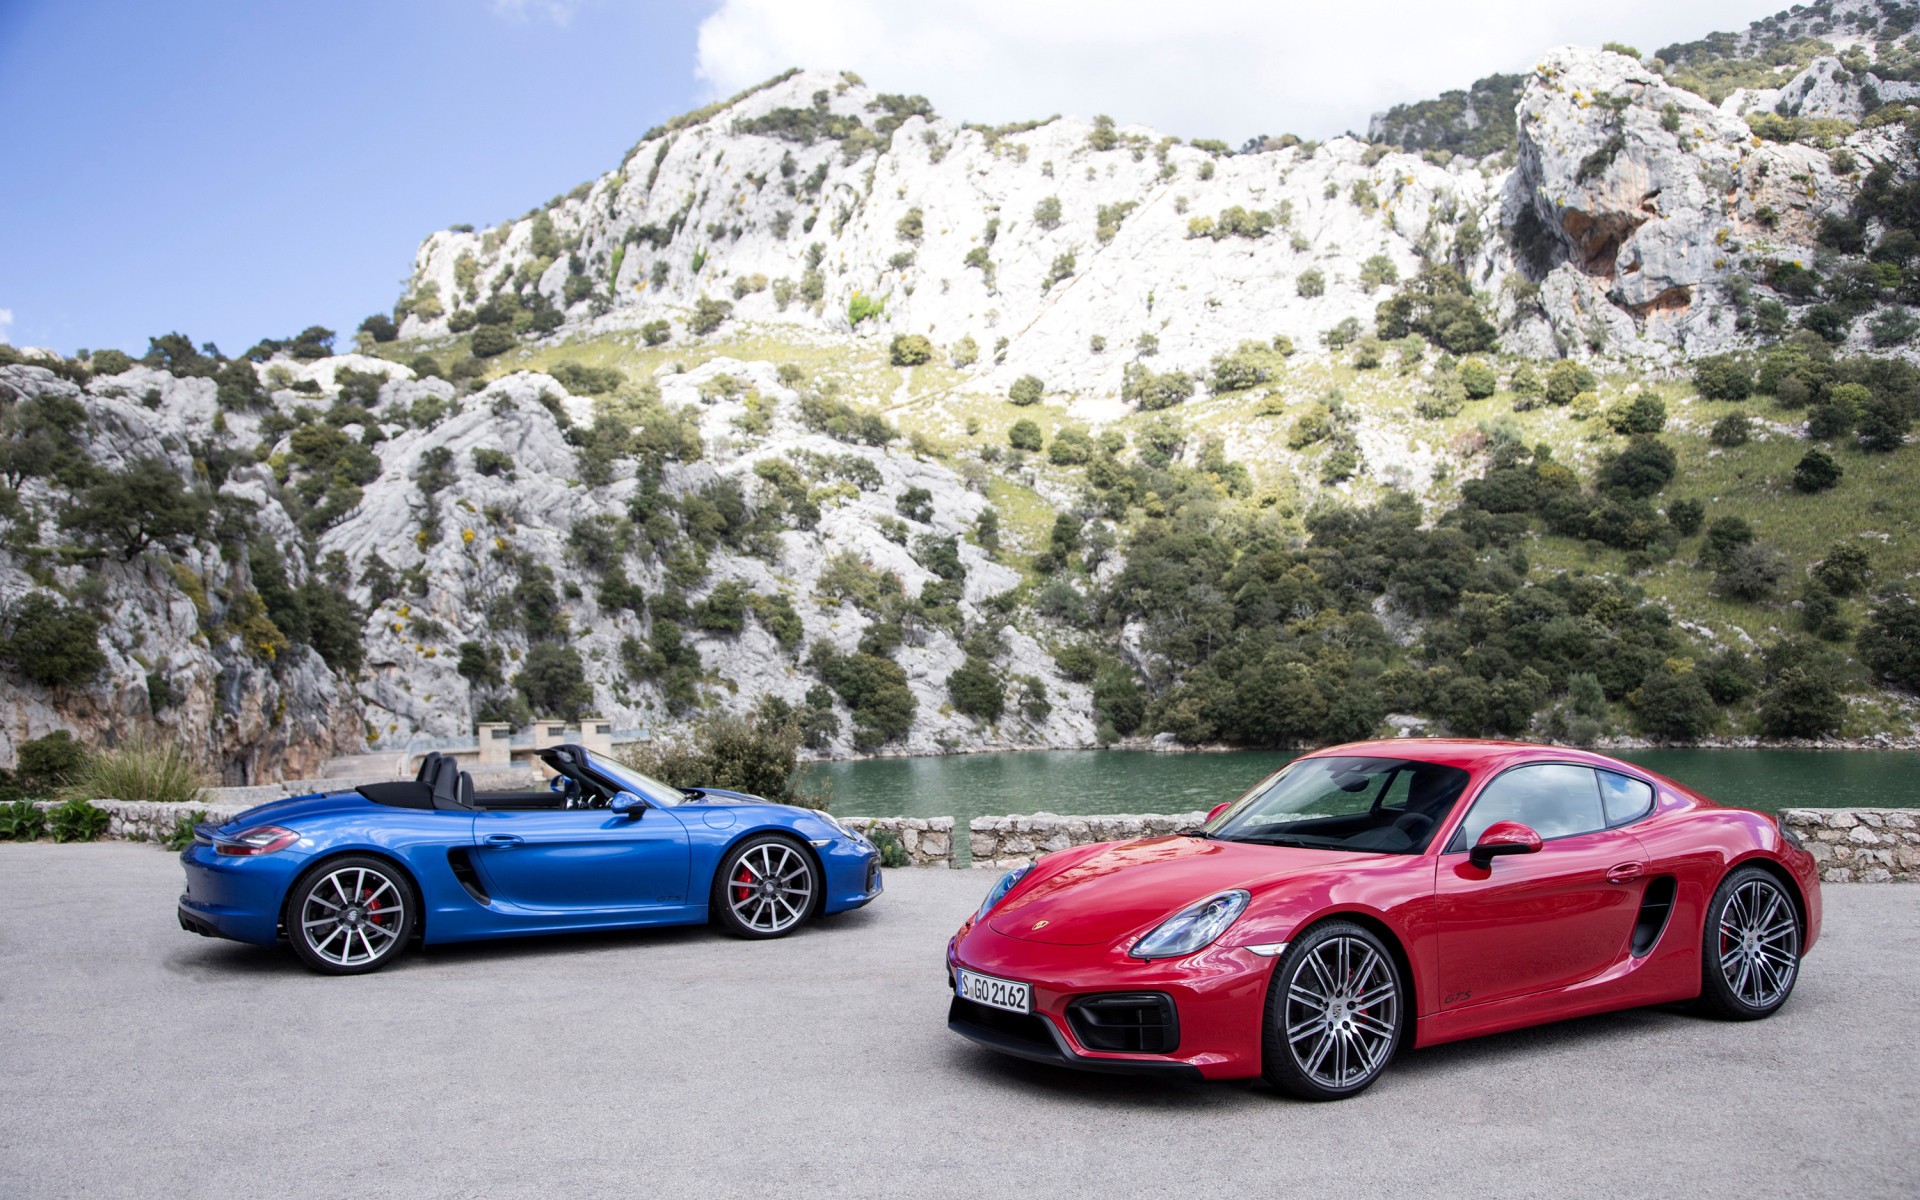 Два спортивных автомобиля Porsche Boxster и Porsche Cayman GTS  у воды 